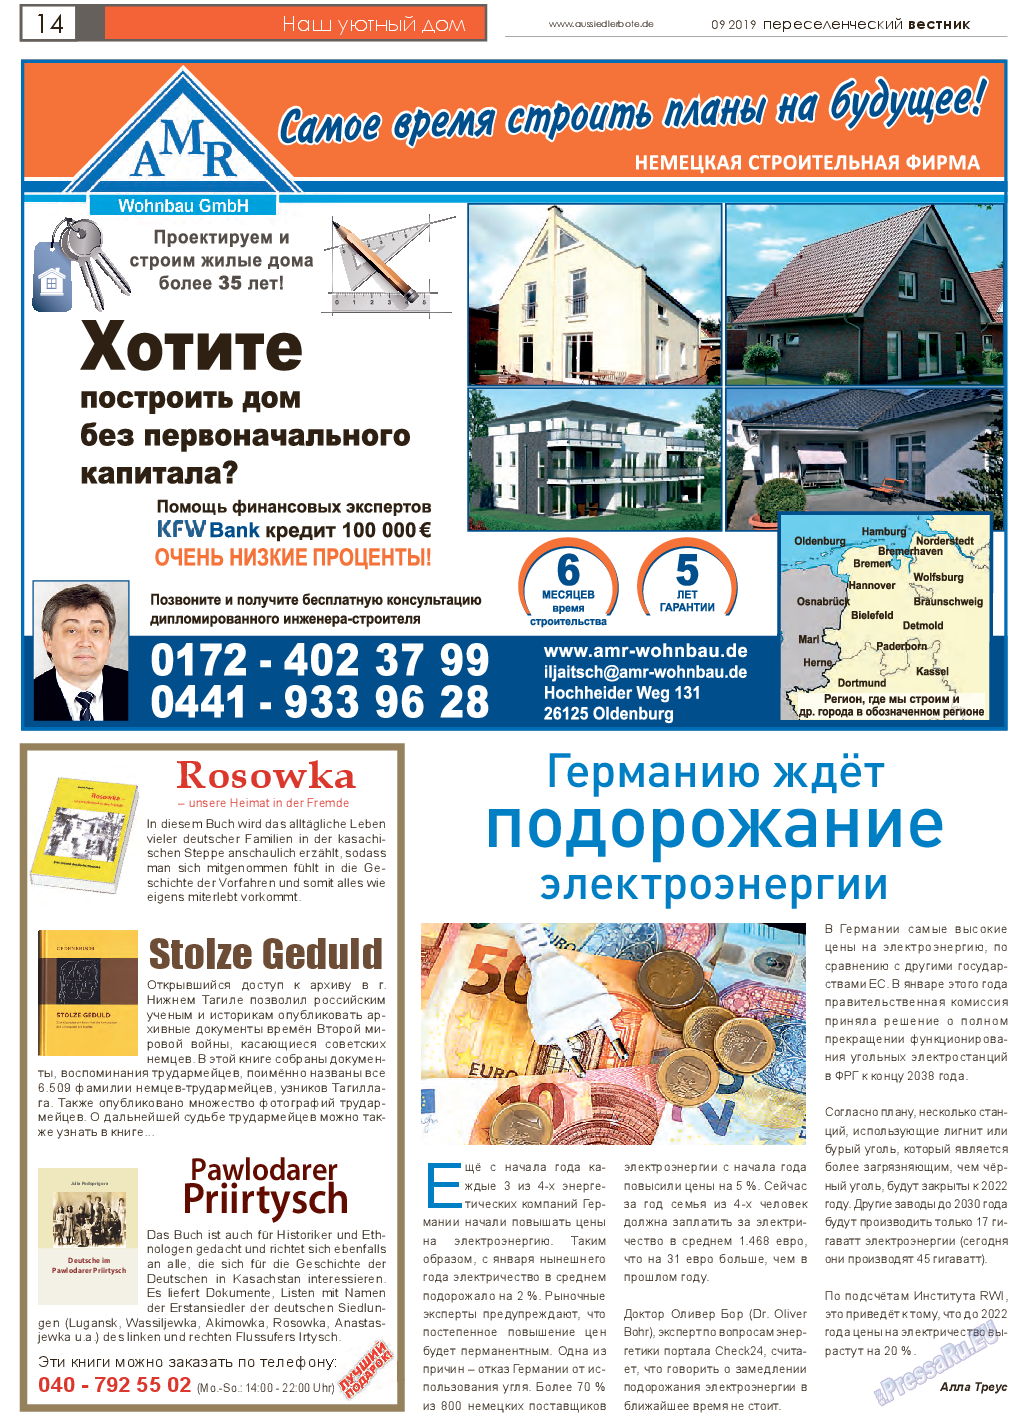 Переселенческий вестник, газета. 2019 №9 стр.14